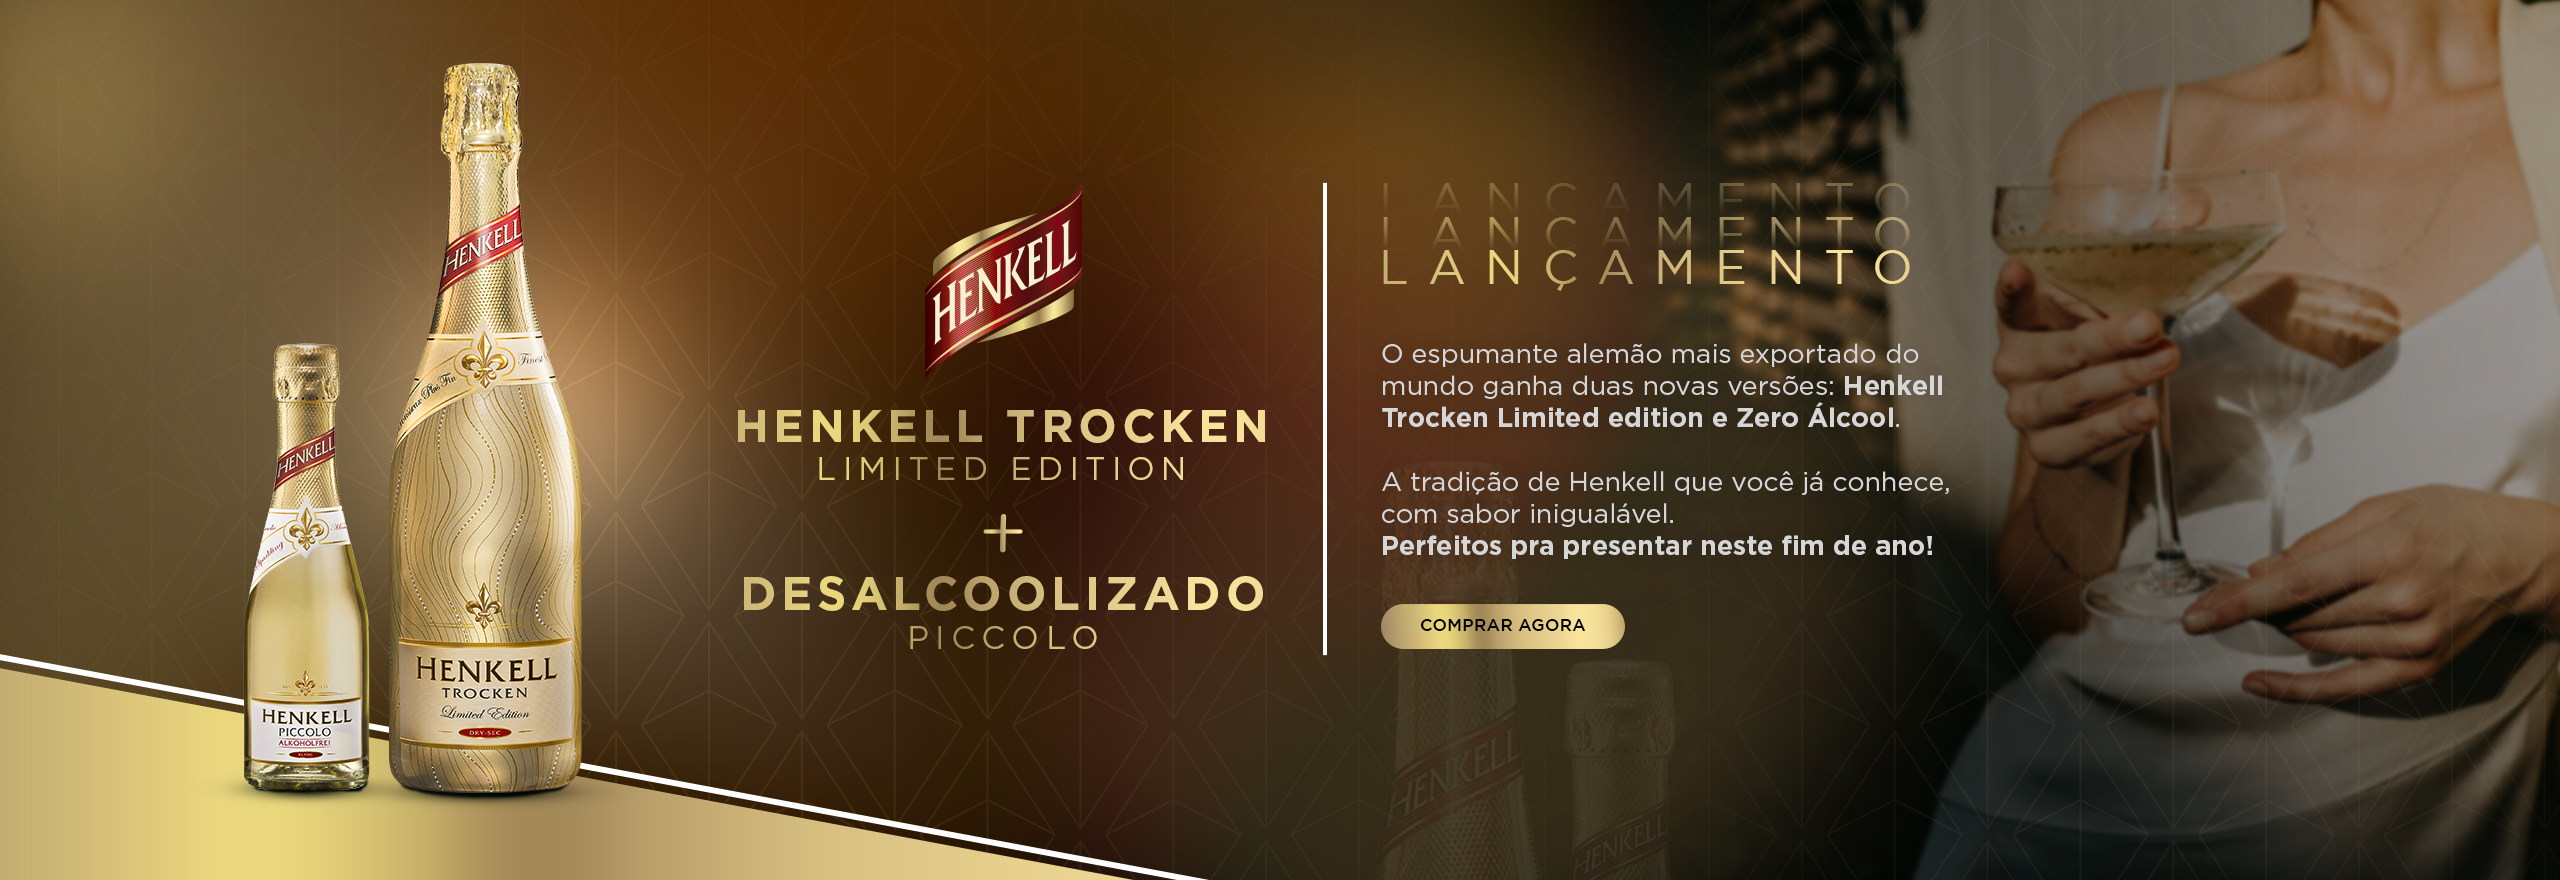 Henkell+Picolo Zero